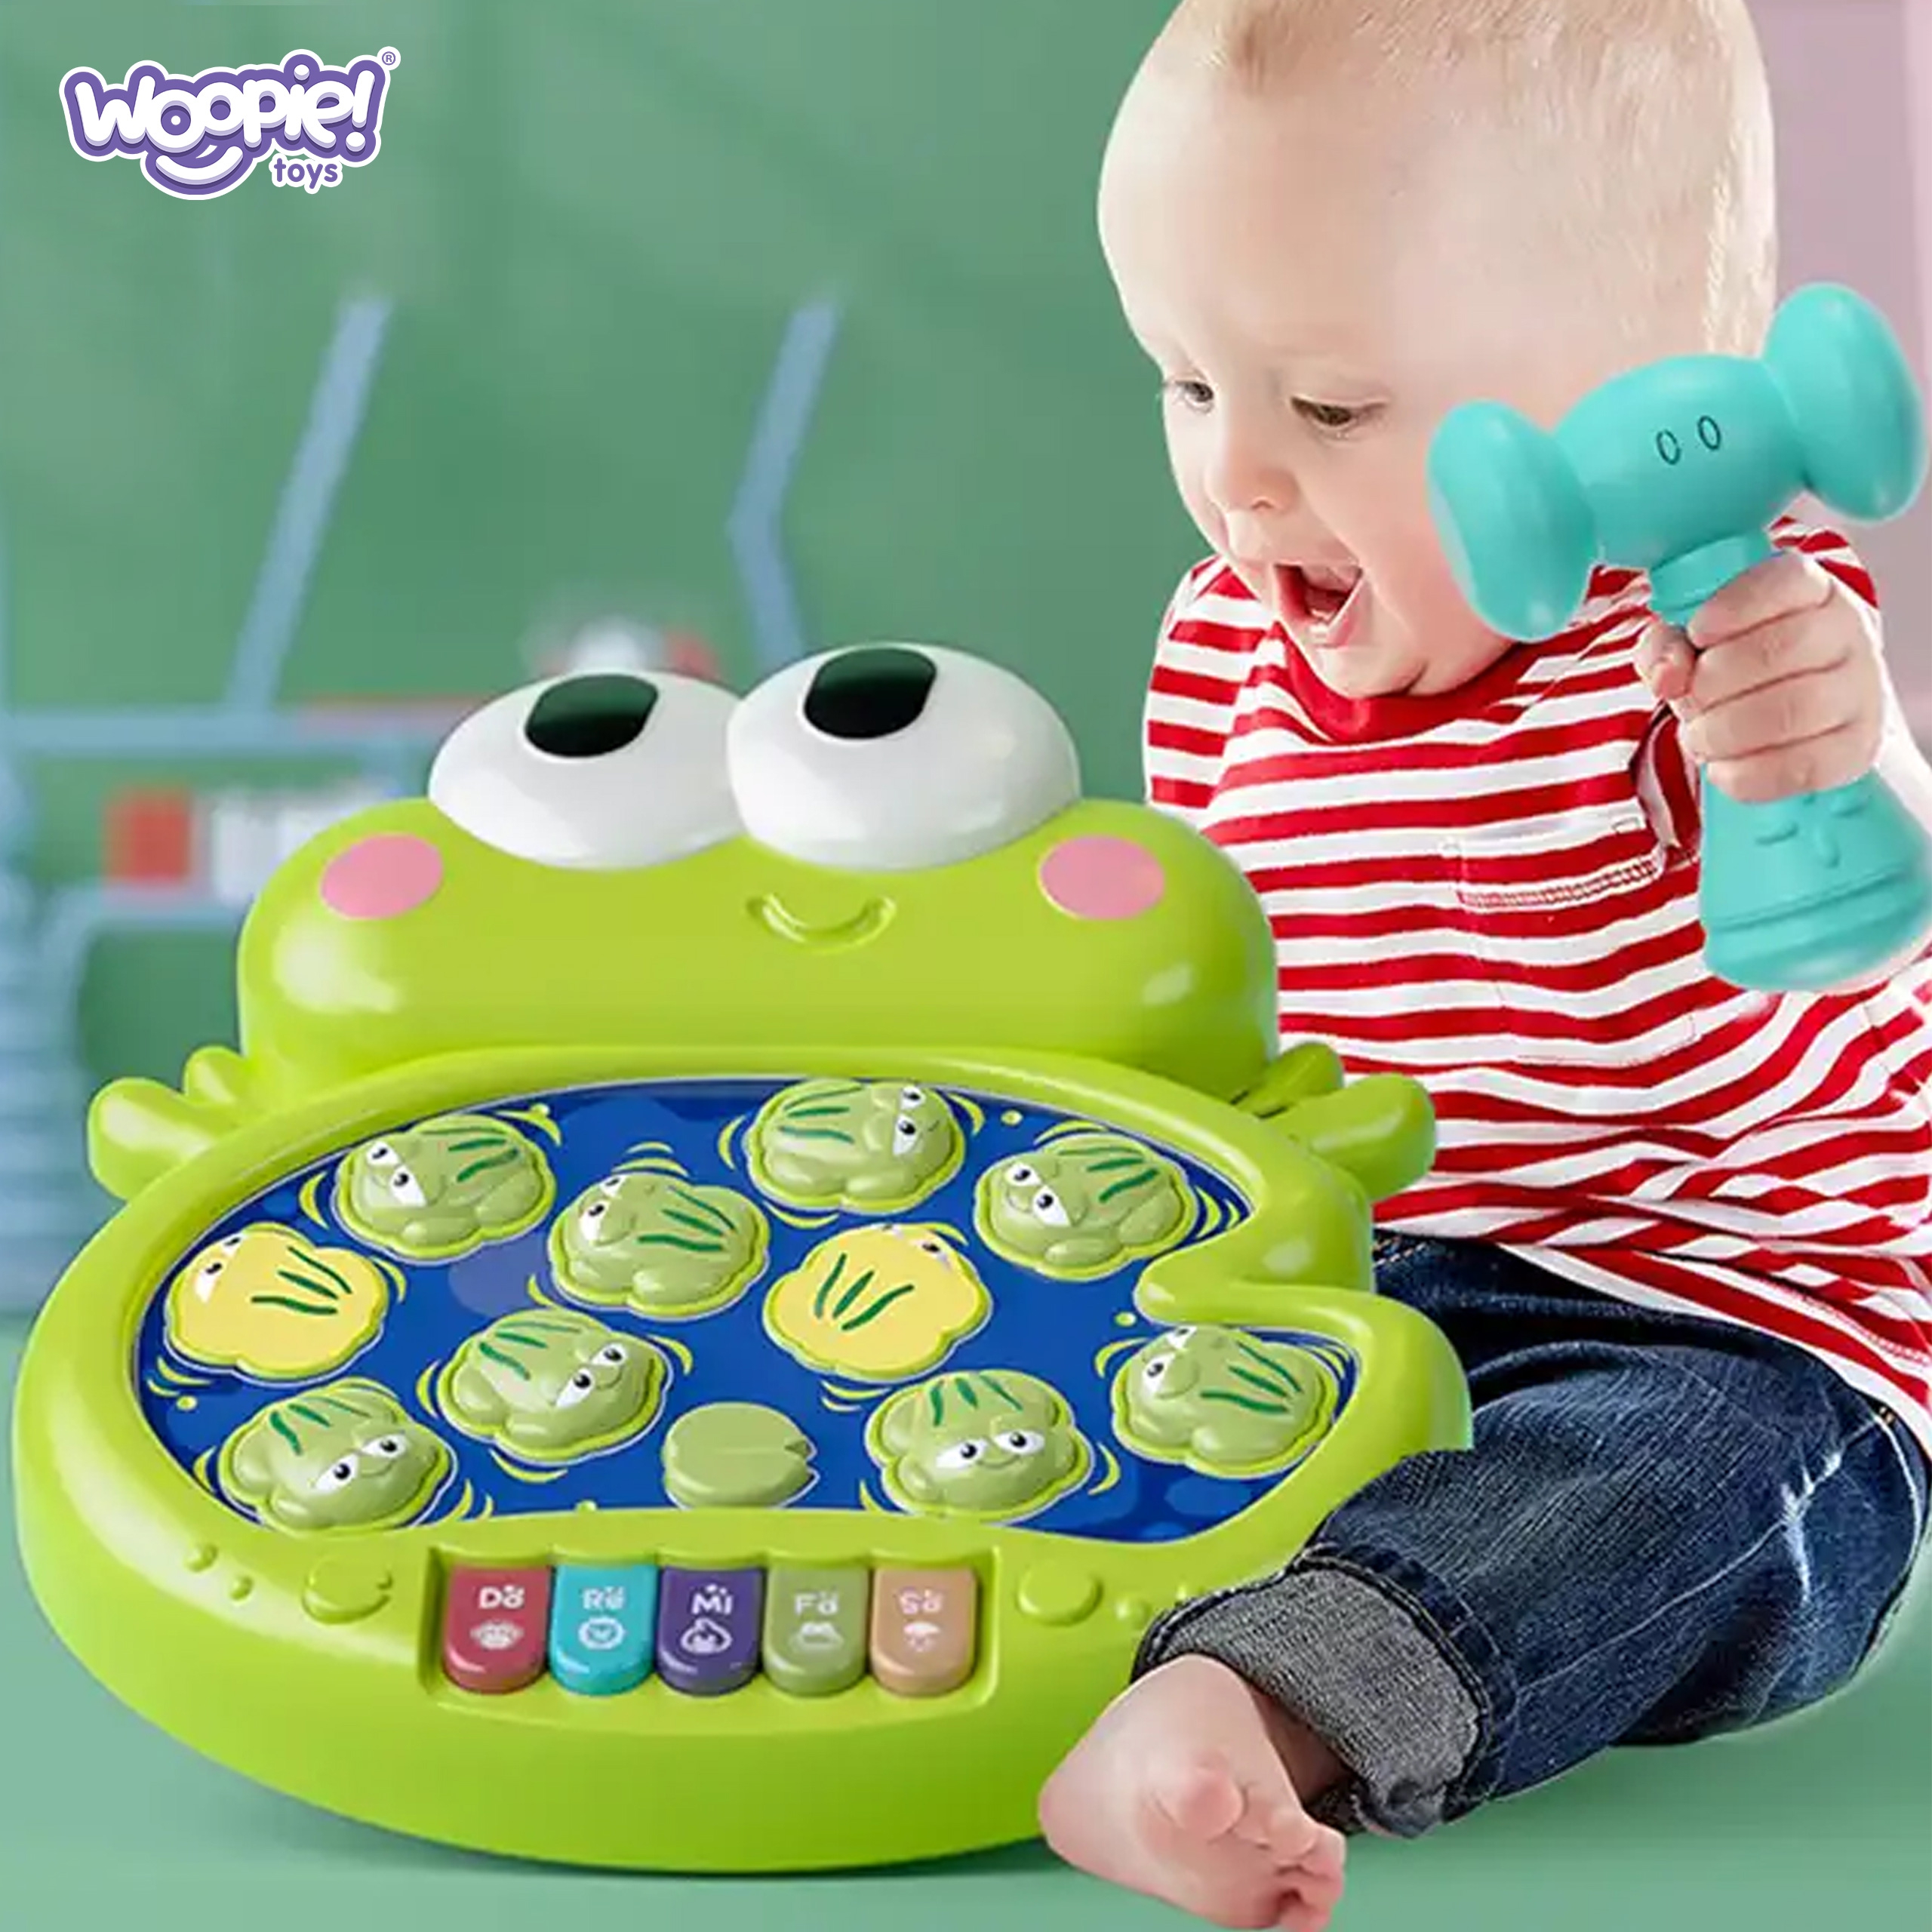 Zbijaj żabki zabawka interaktywna dla niemowląt, zabawka dla dzieci, Woopie